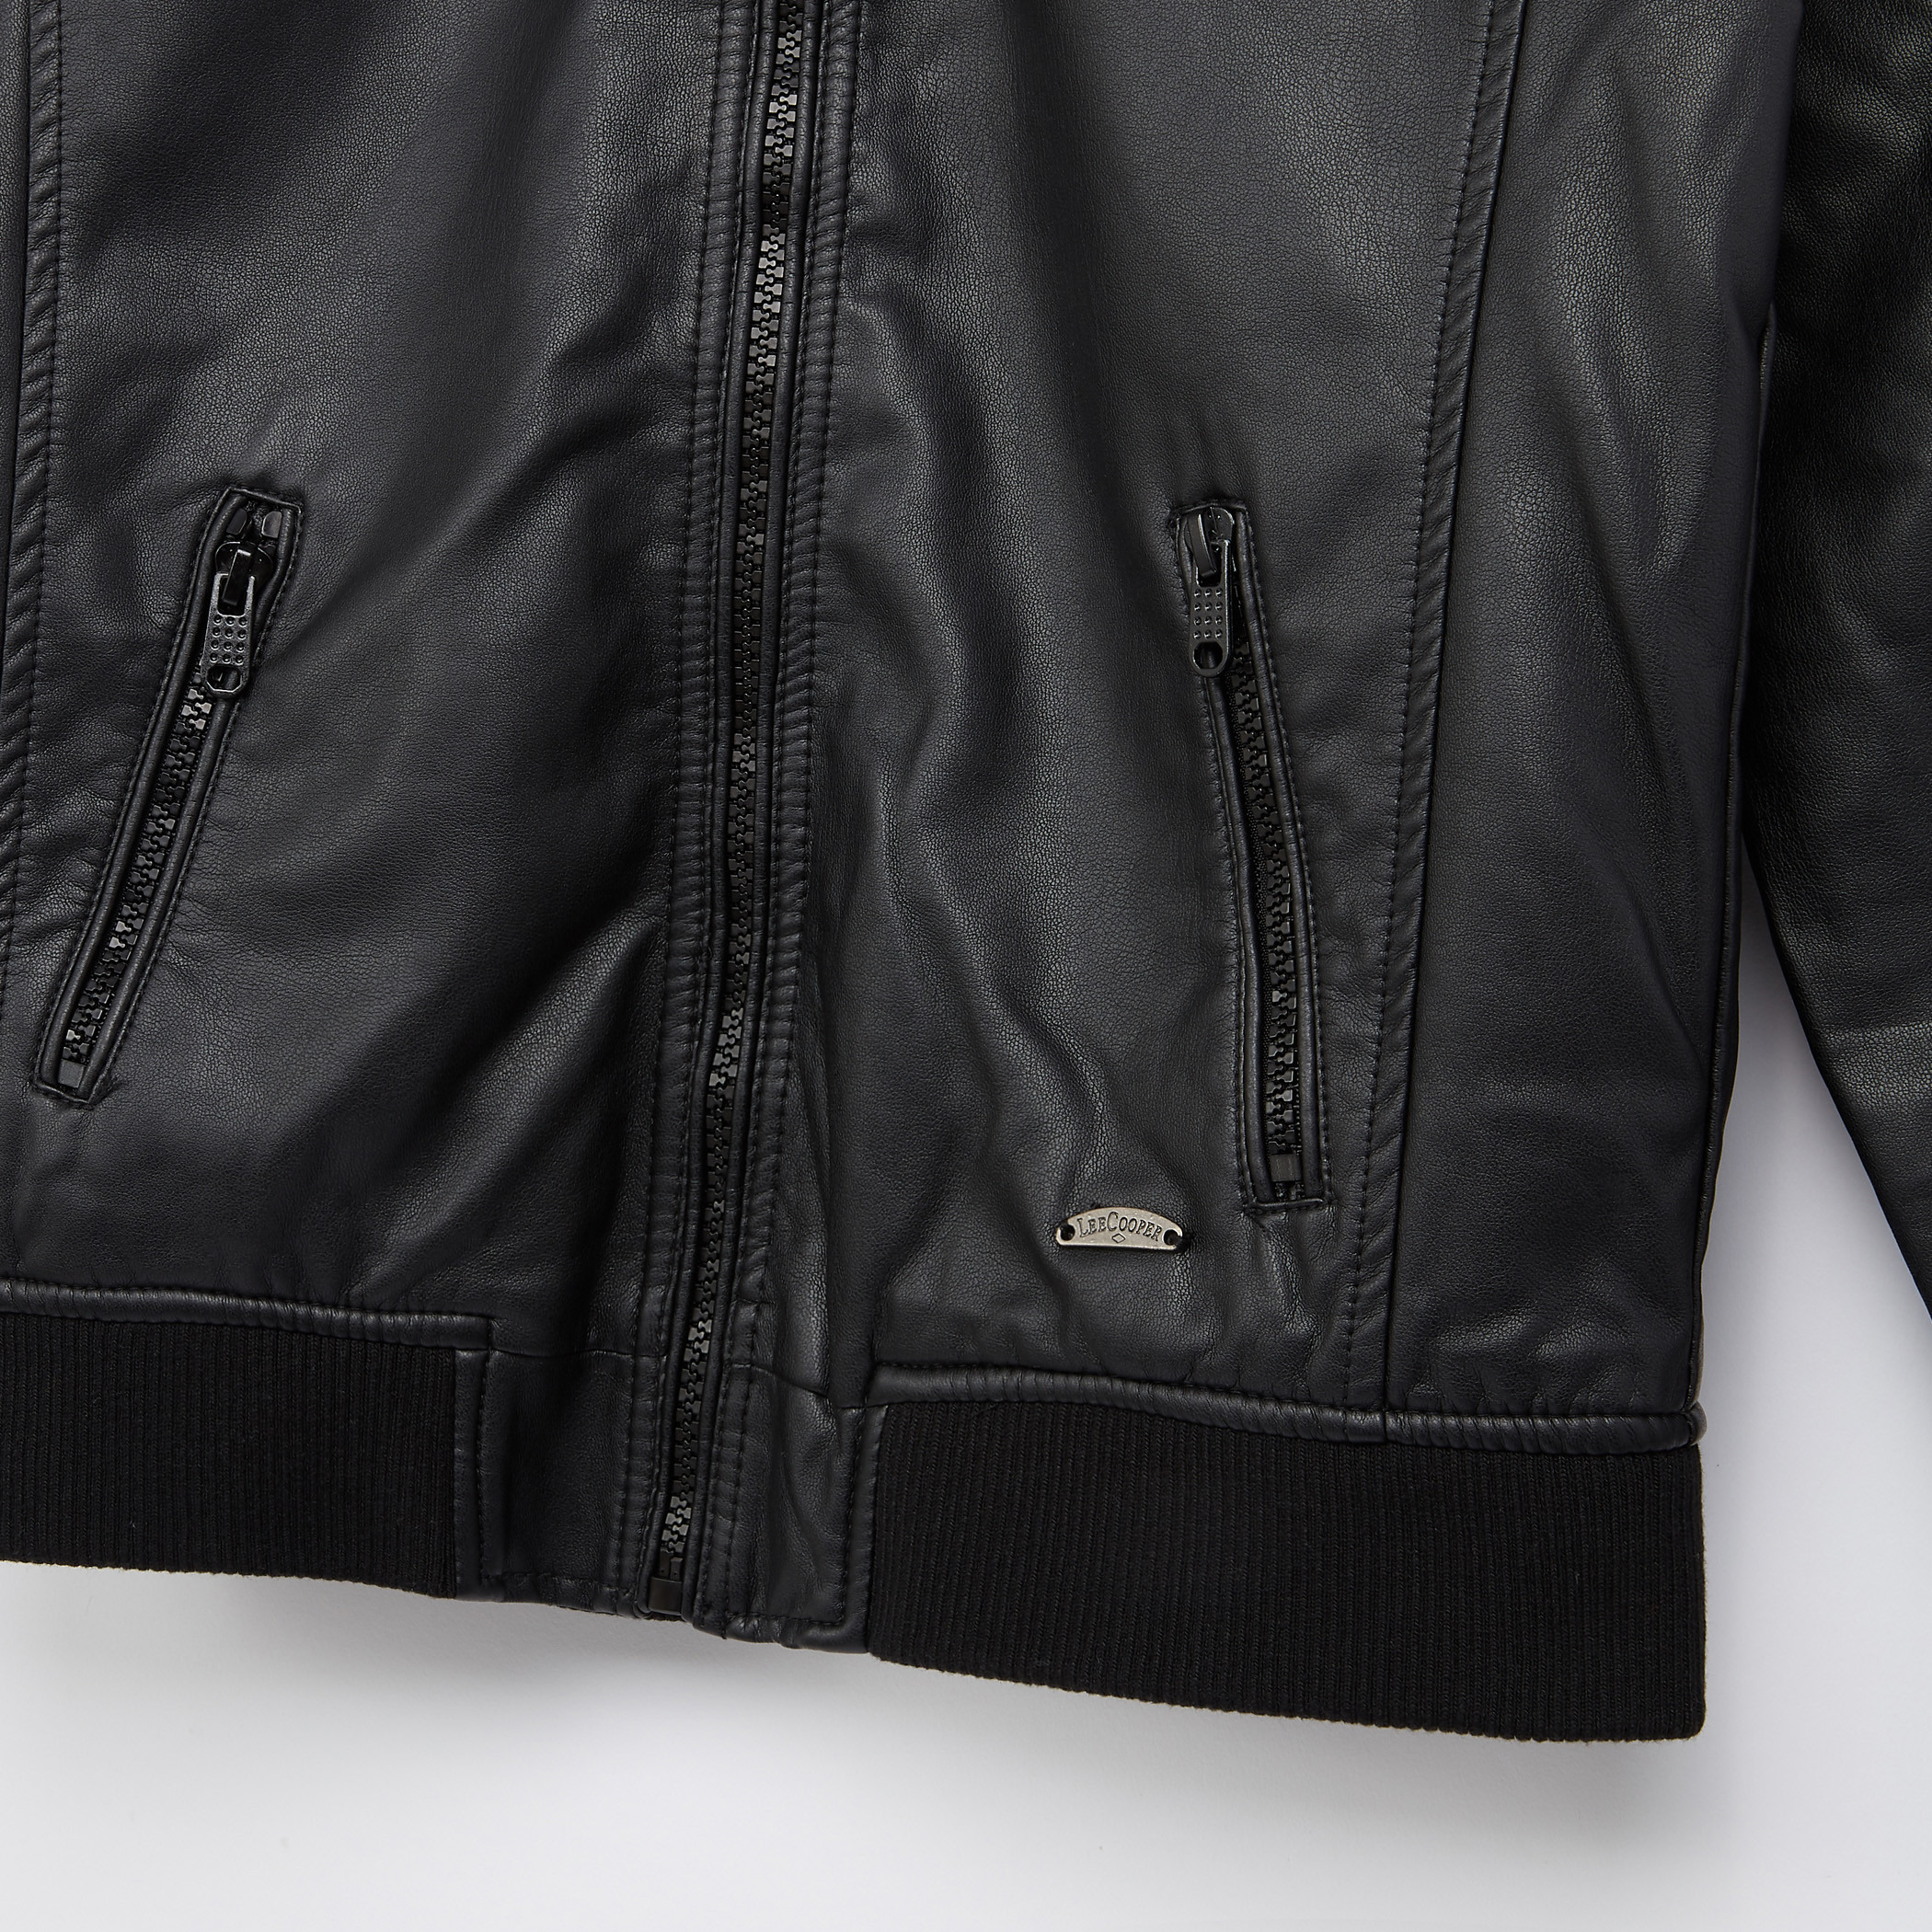 Buy Lee Cooper Women's Jacket (JK2270 Brown XX-Large) at Amazon.in